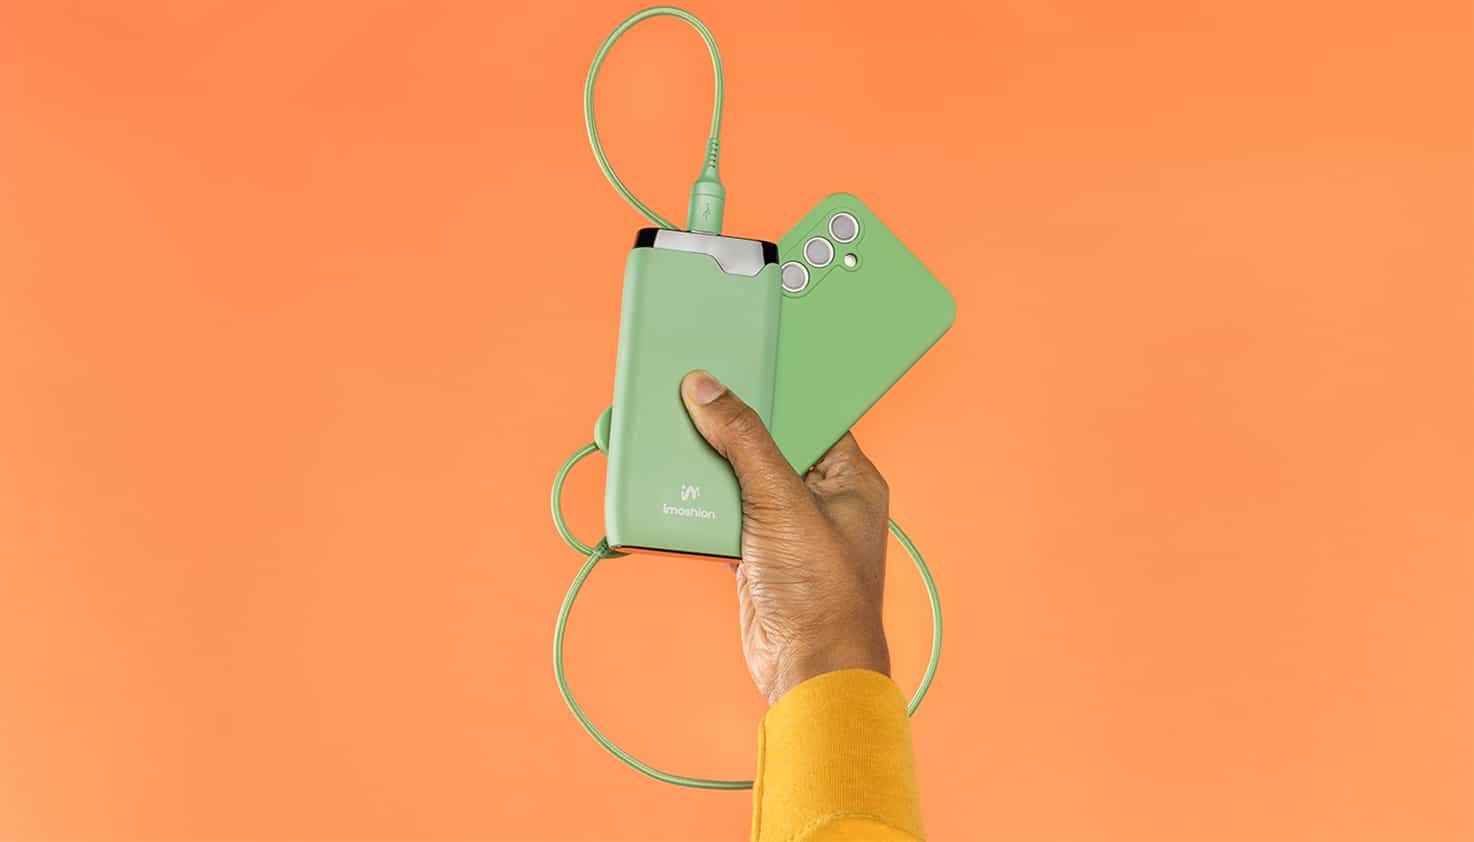 Knaloranje achtergrond met een opvallende groene kleur powerbank en matchende telefoon.